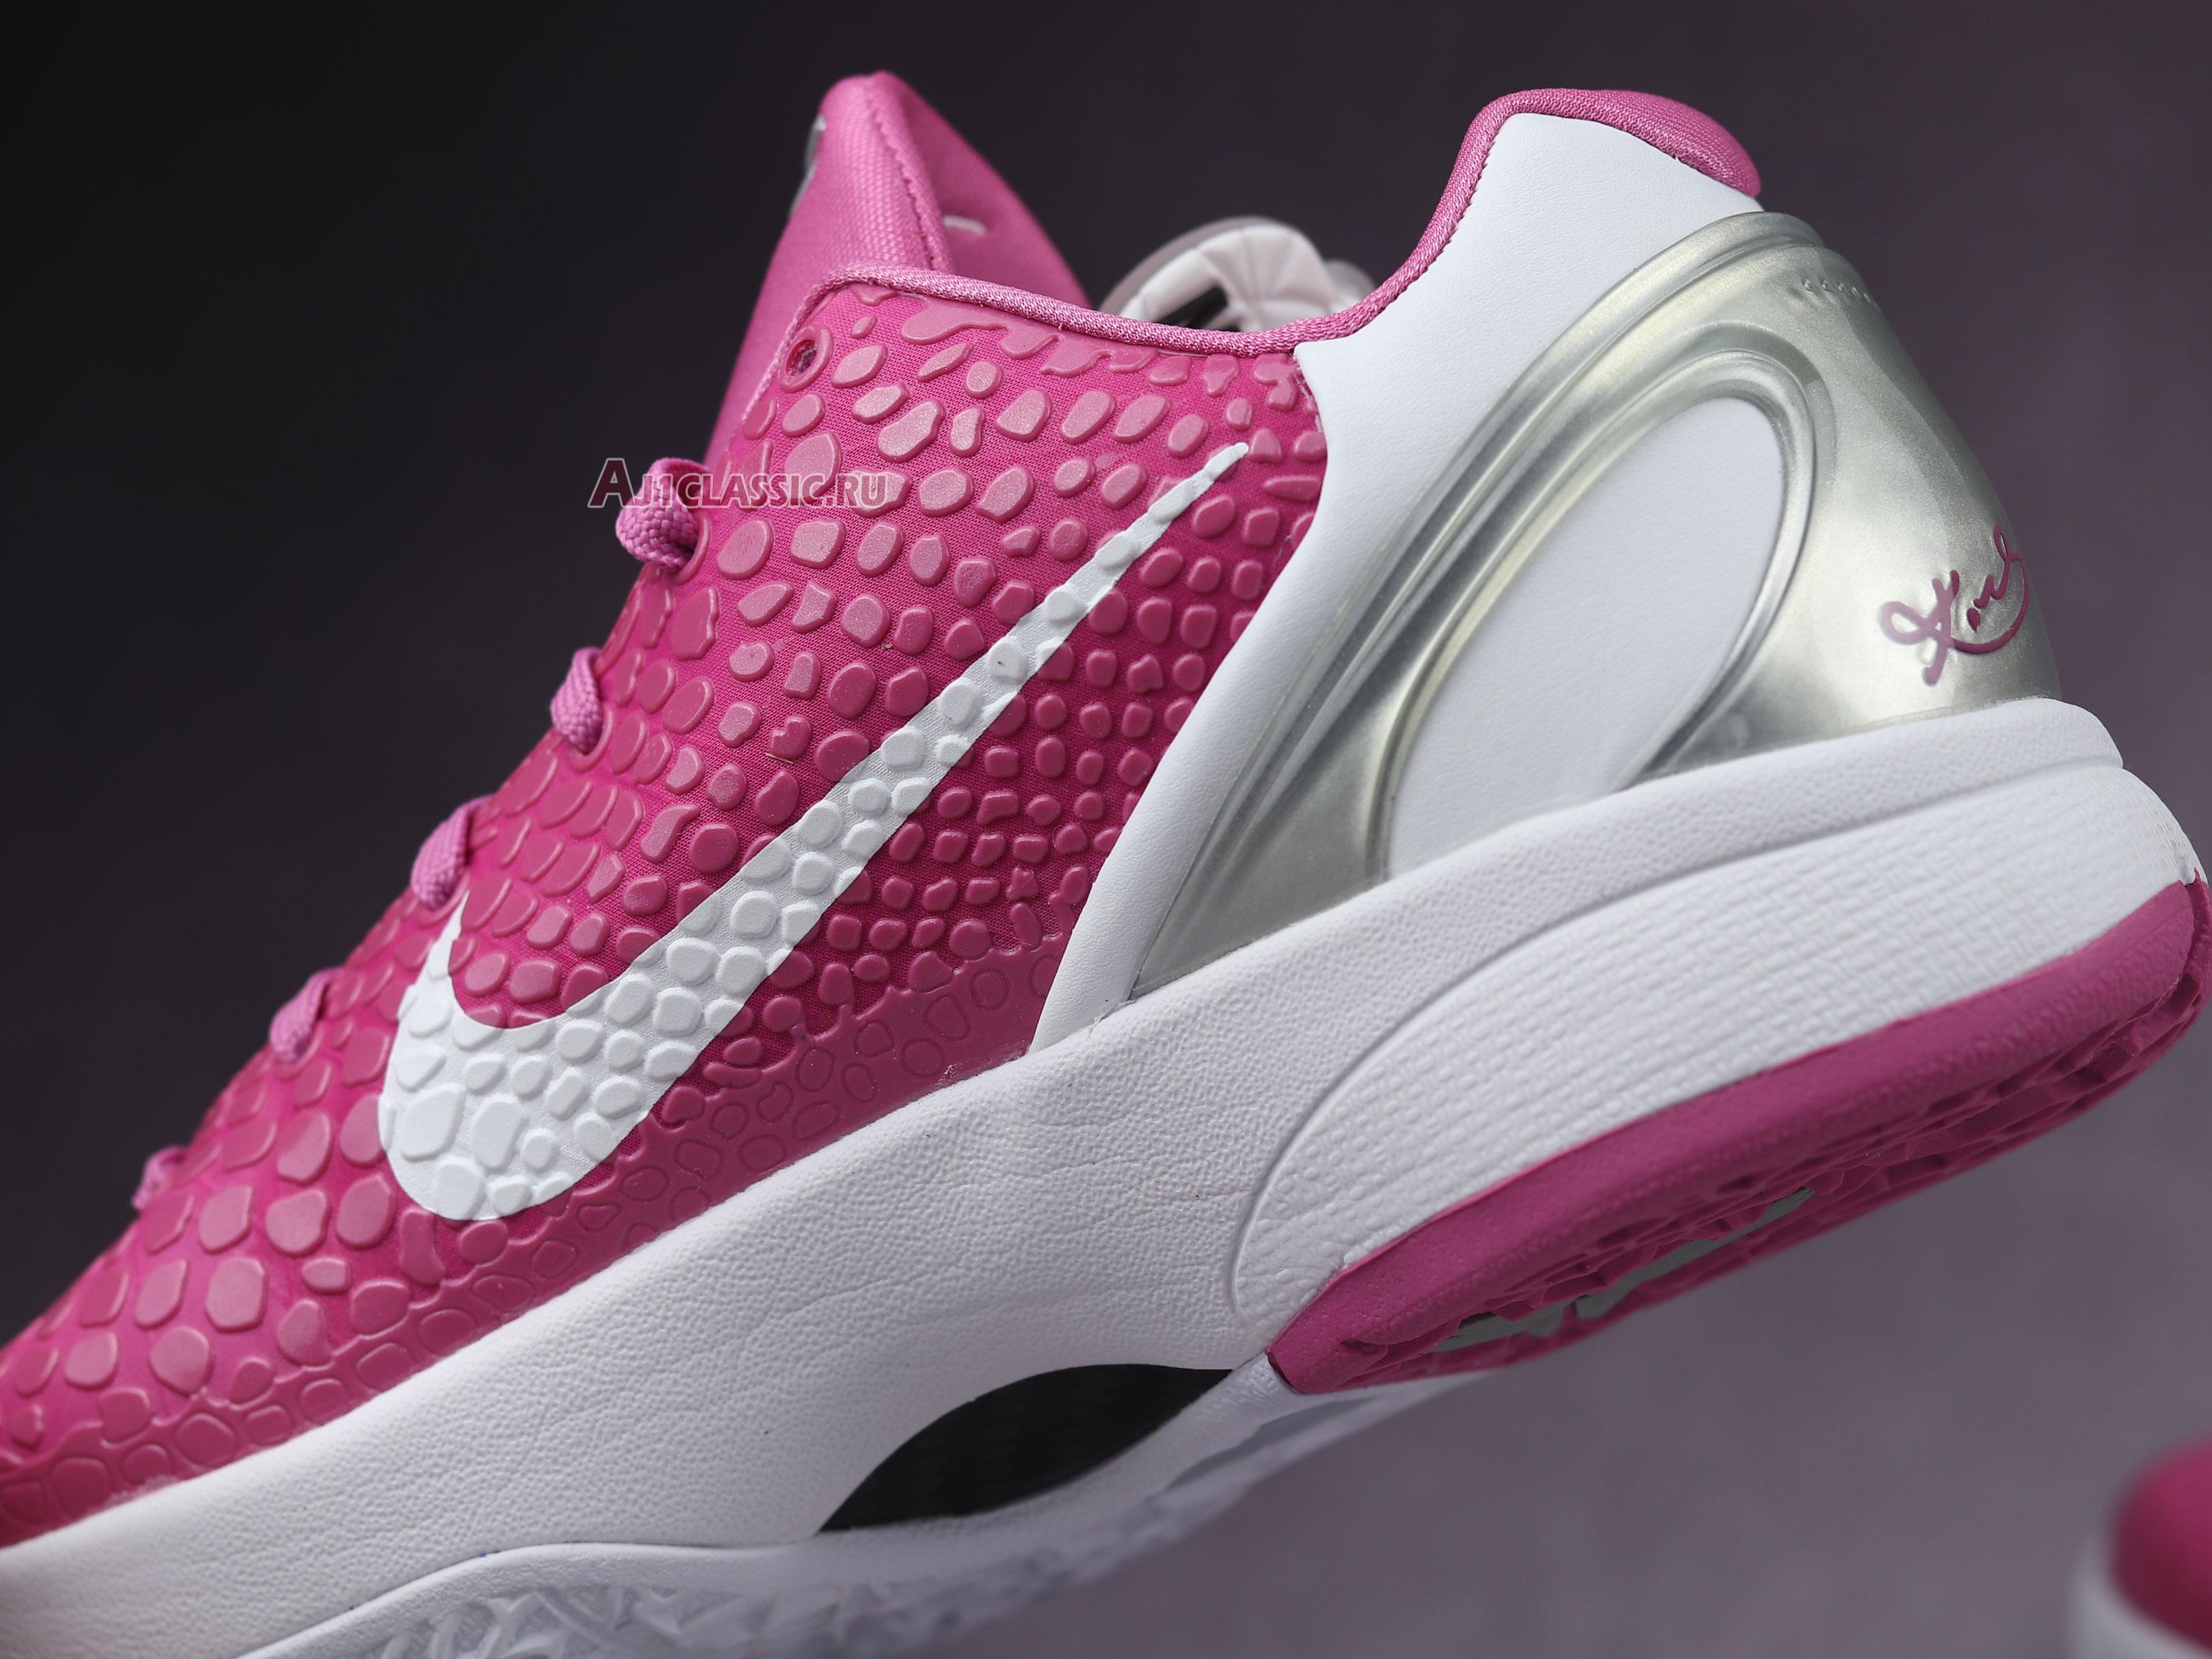 Nike Zoom pink kobes shoes Kobe 6 Protro Think Pink CW2190-600 Pinkfire/Metallic